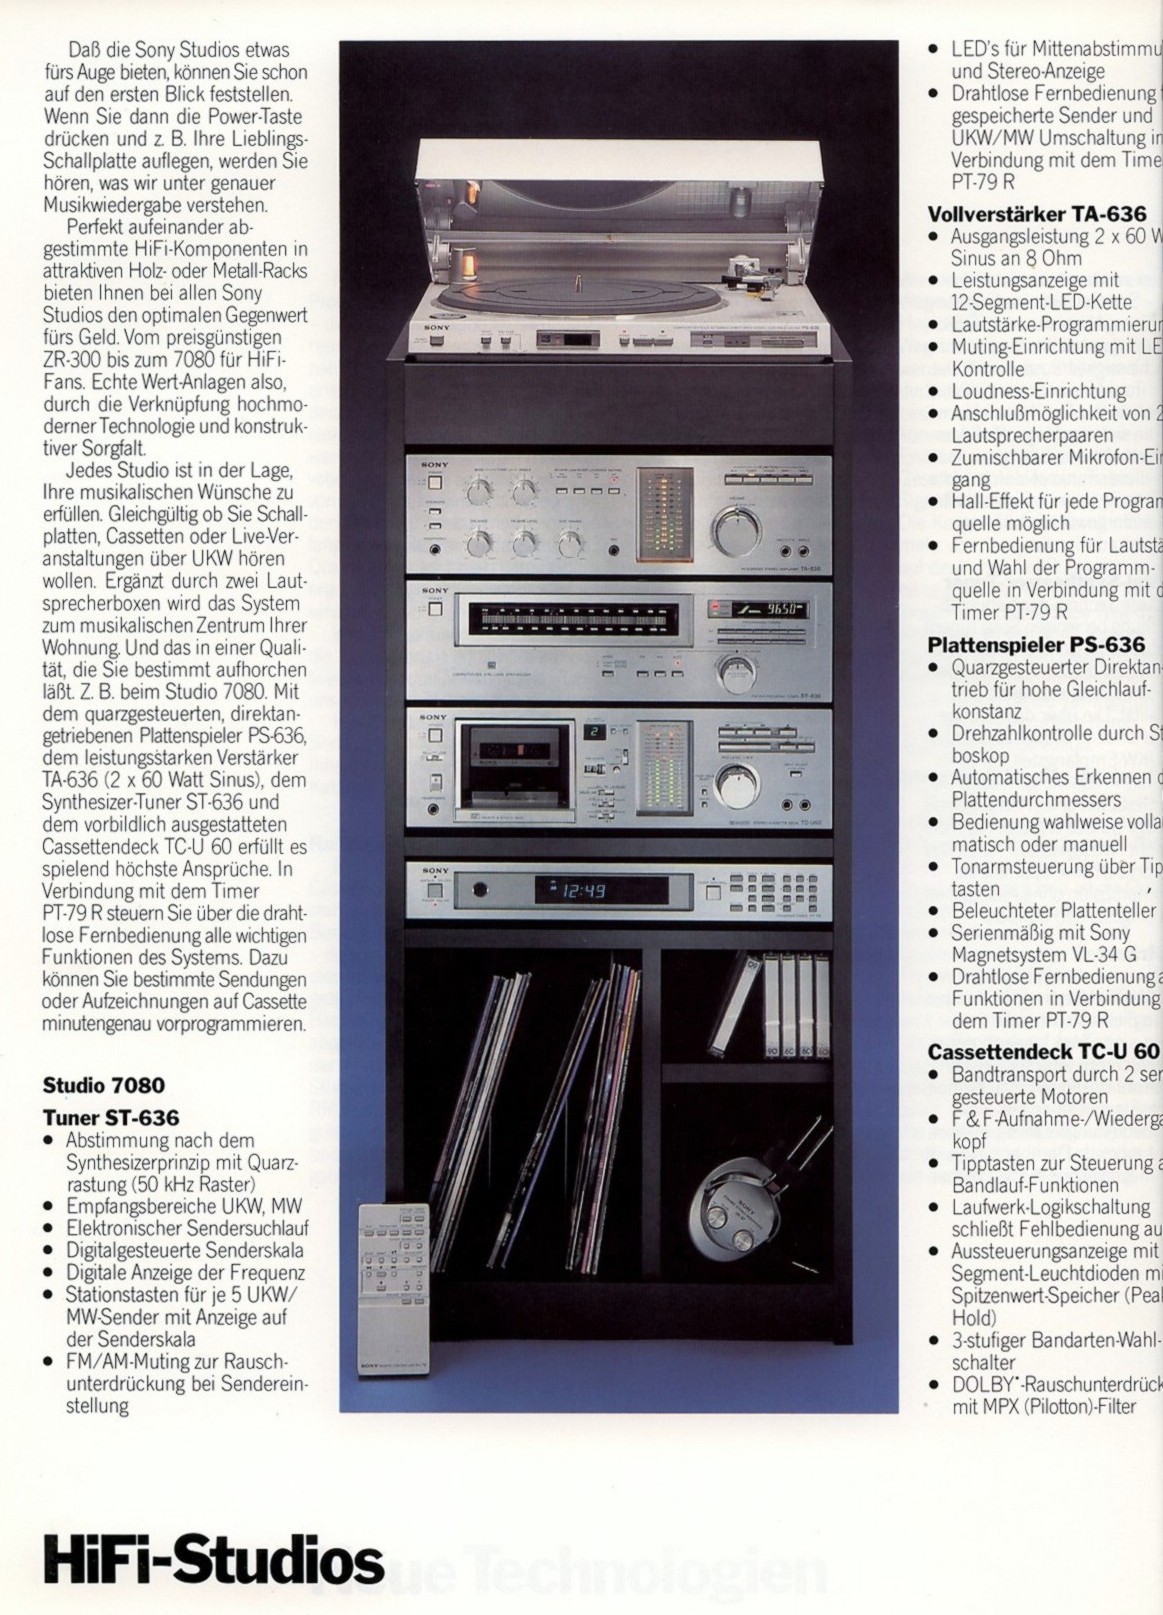 Sony PS-ST-TA-636-TC-U 60-Prospekt-1981.jpg